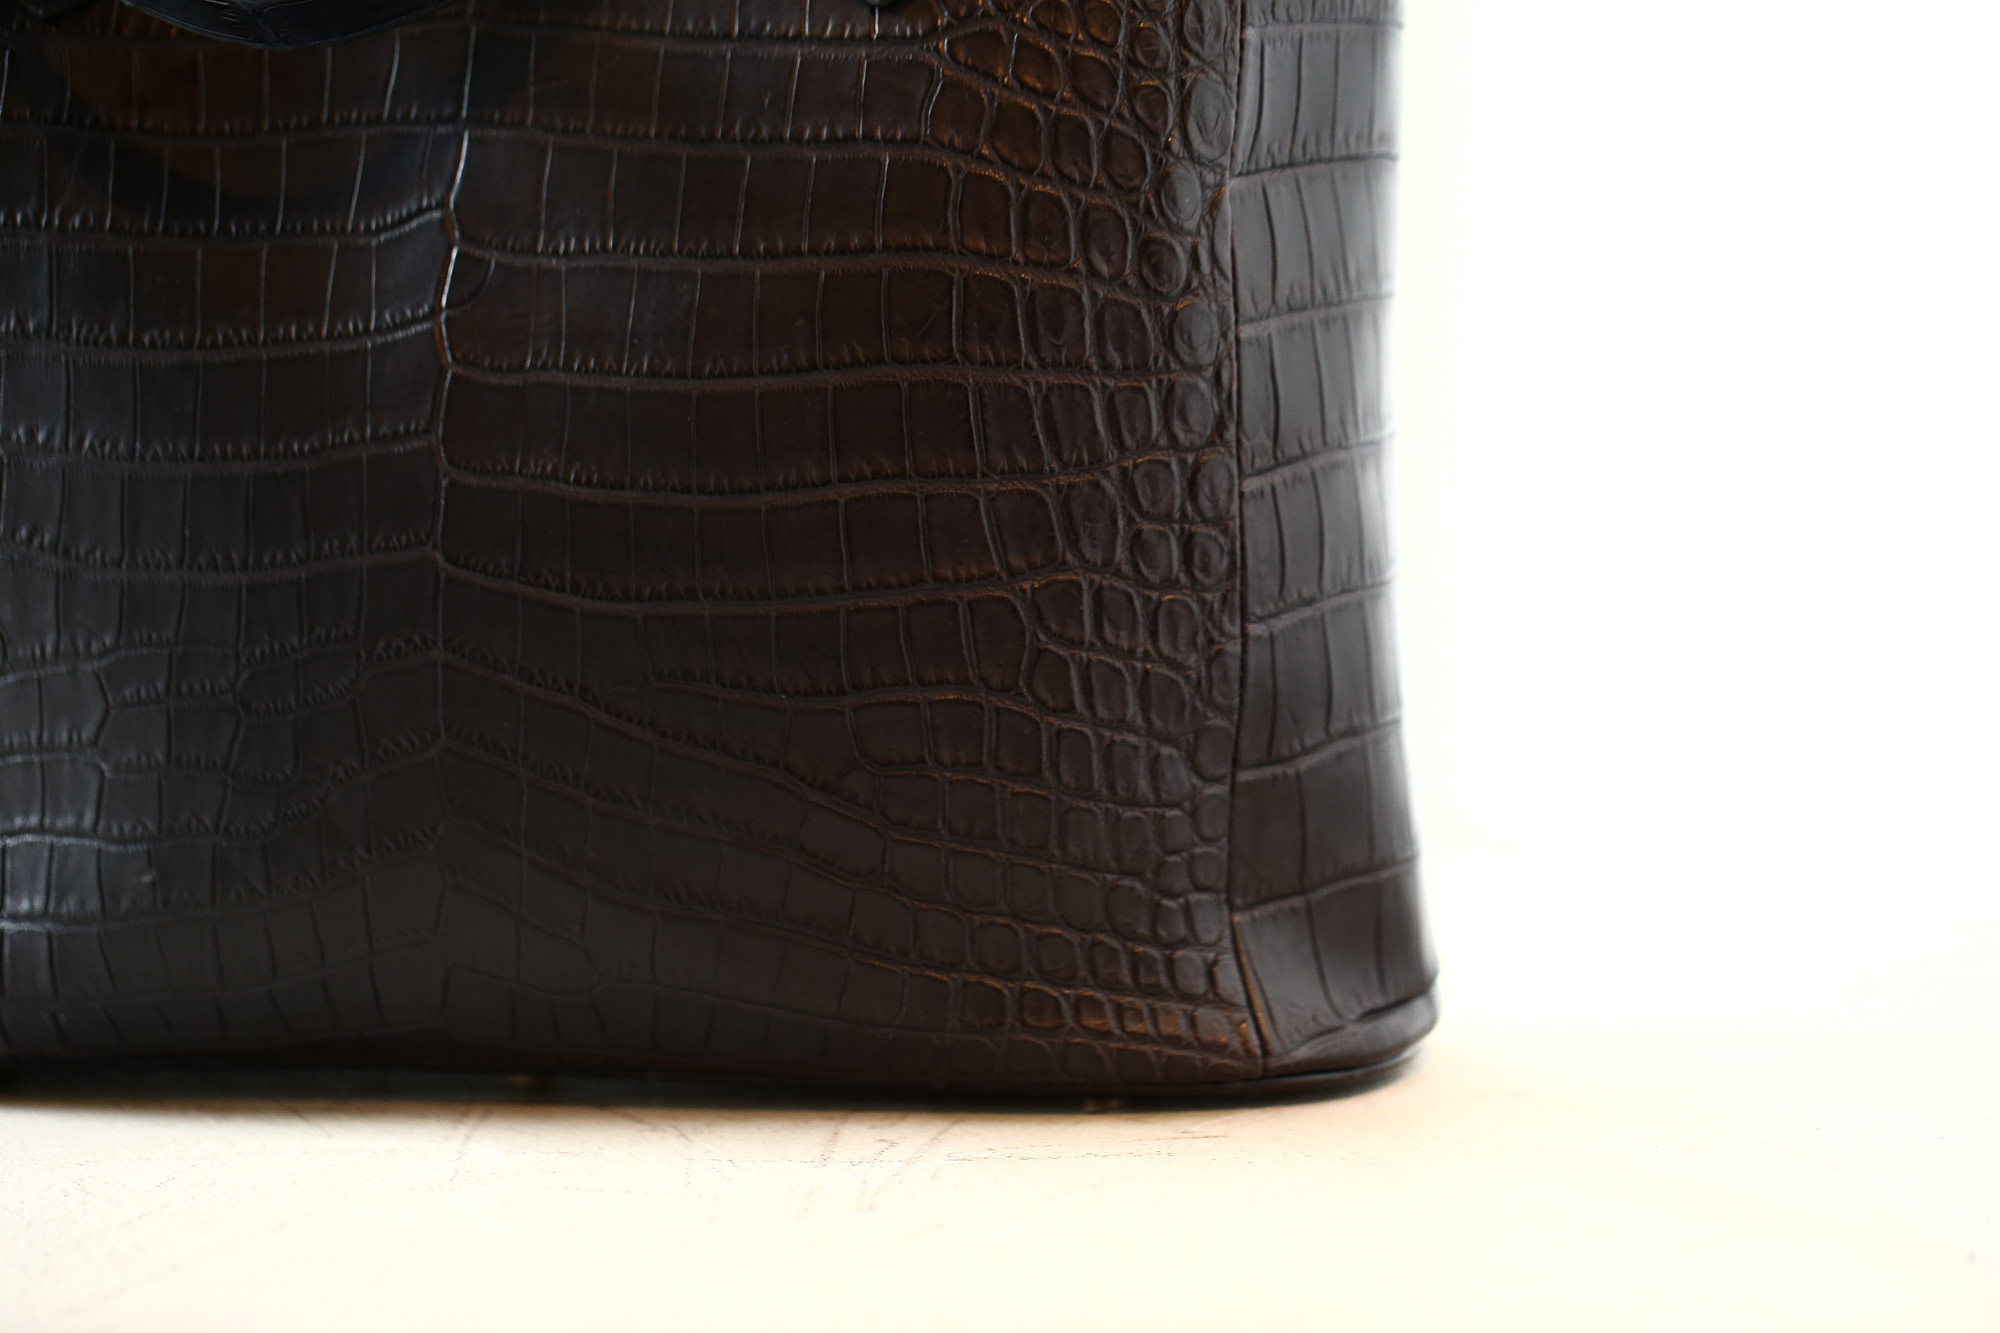 Cisei × 山本製鞄 (シセイ × 山本製鞄) Crocodile Tote Bag Medium (クロコダイル トートバッグ ミディアム) Nile Crocodile Leather (ワニ革) ナイル クロコダイル トート バッグ BLACK(ブラック),NAVY(ネイビー),BROWN(ブラウン) Made in Japan (日本製) cisei yamamotoseiho トートバック クロコ 愛知 名古屋 Alto e Diritto アルト エ デリット 